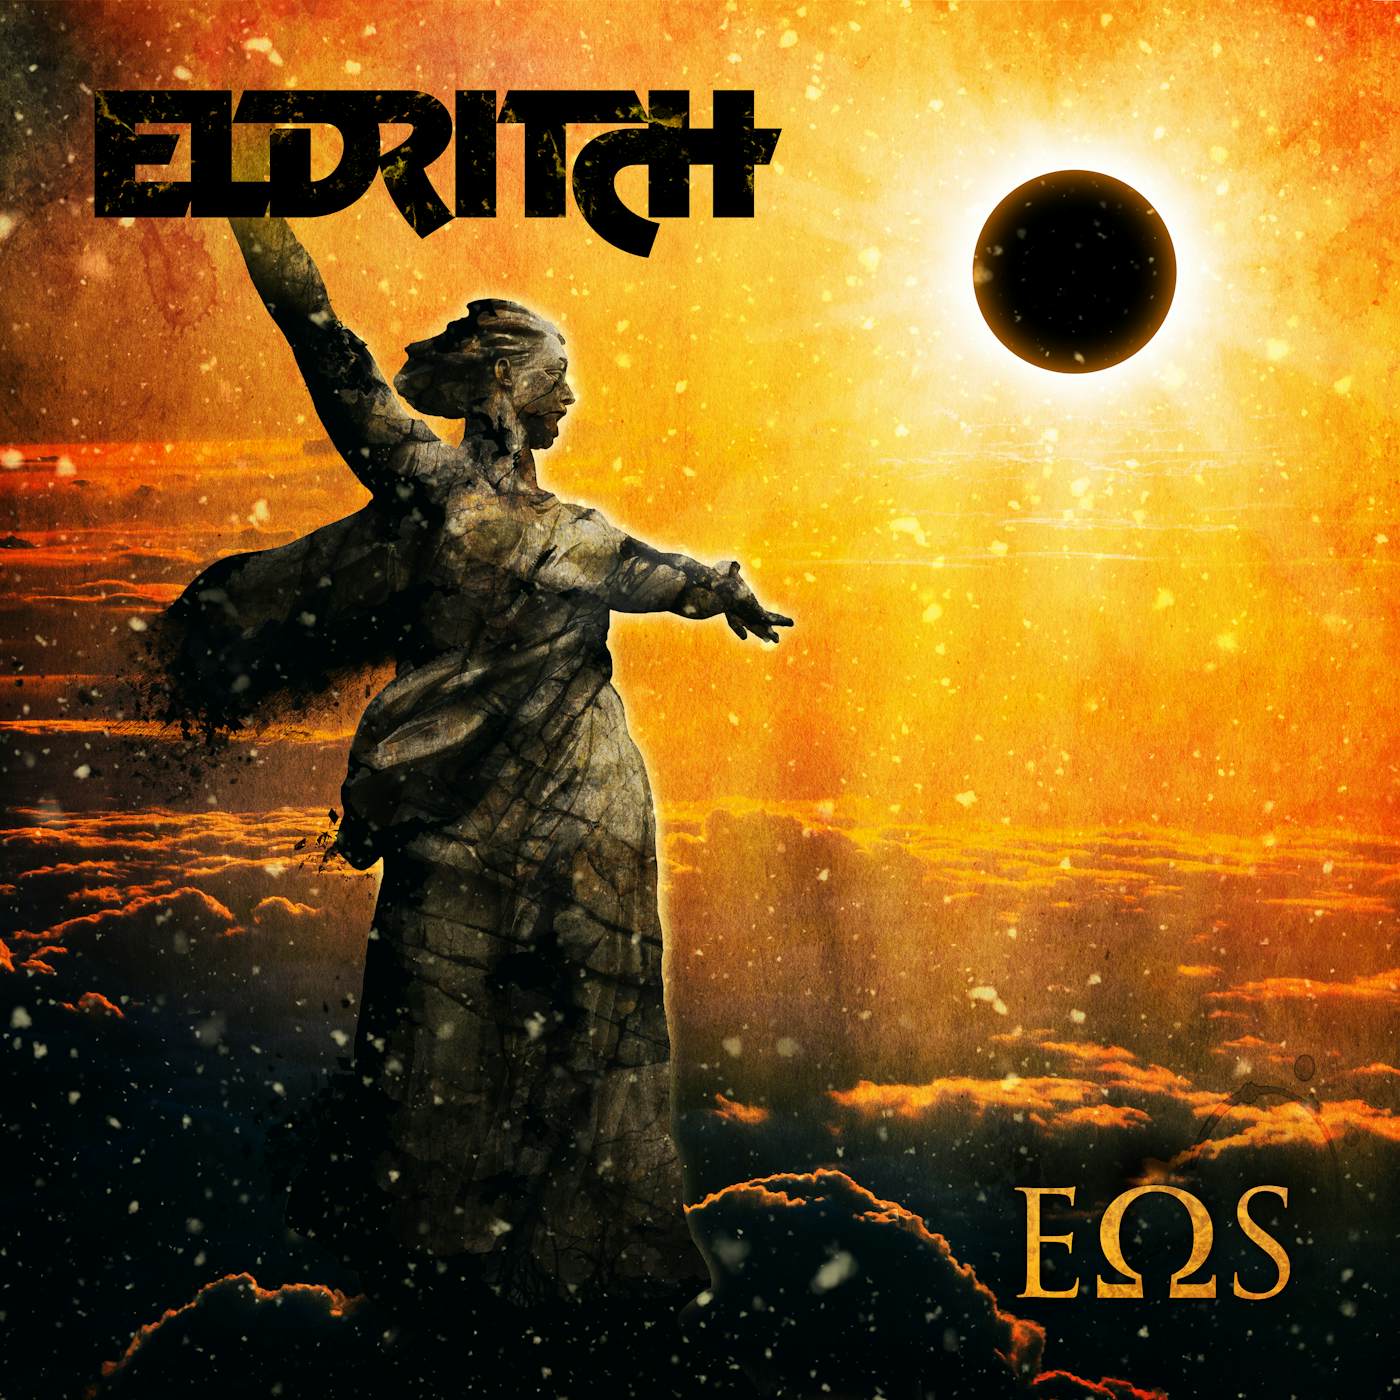 Eldritch Eos CD